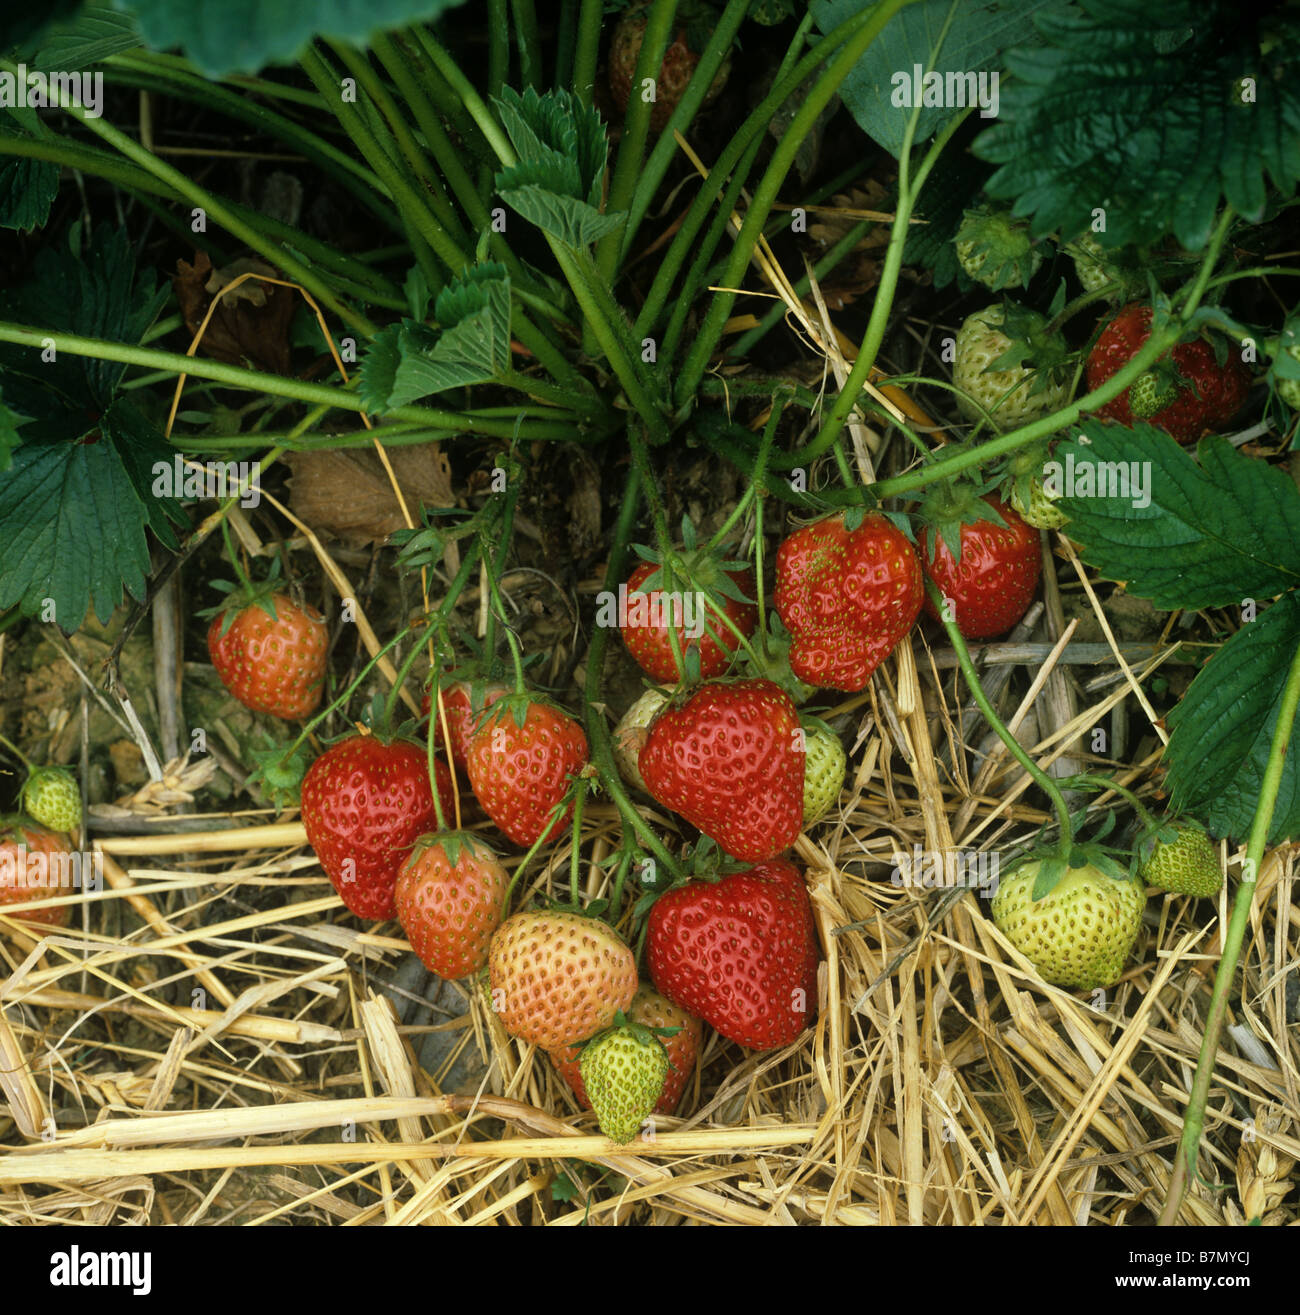 Englische Erdbeer Ernte Obst mit Stroh Mulchen zwischen den Reihen Stockfoto